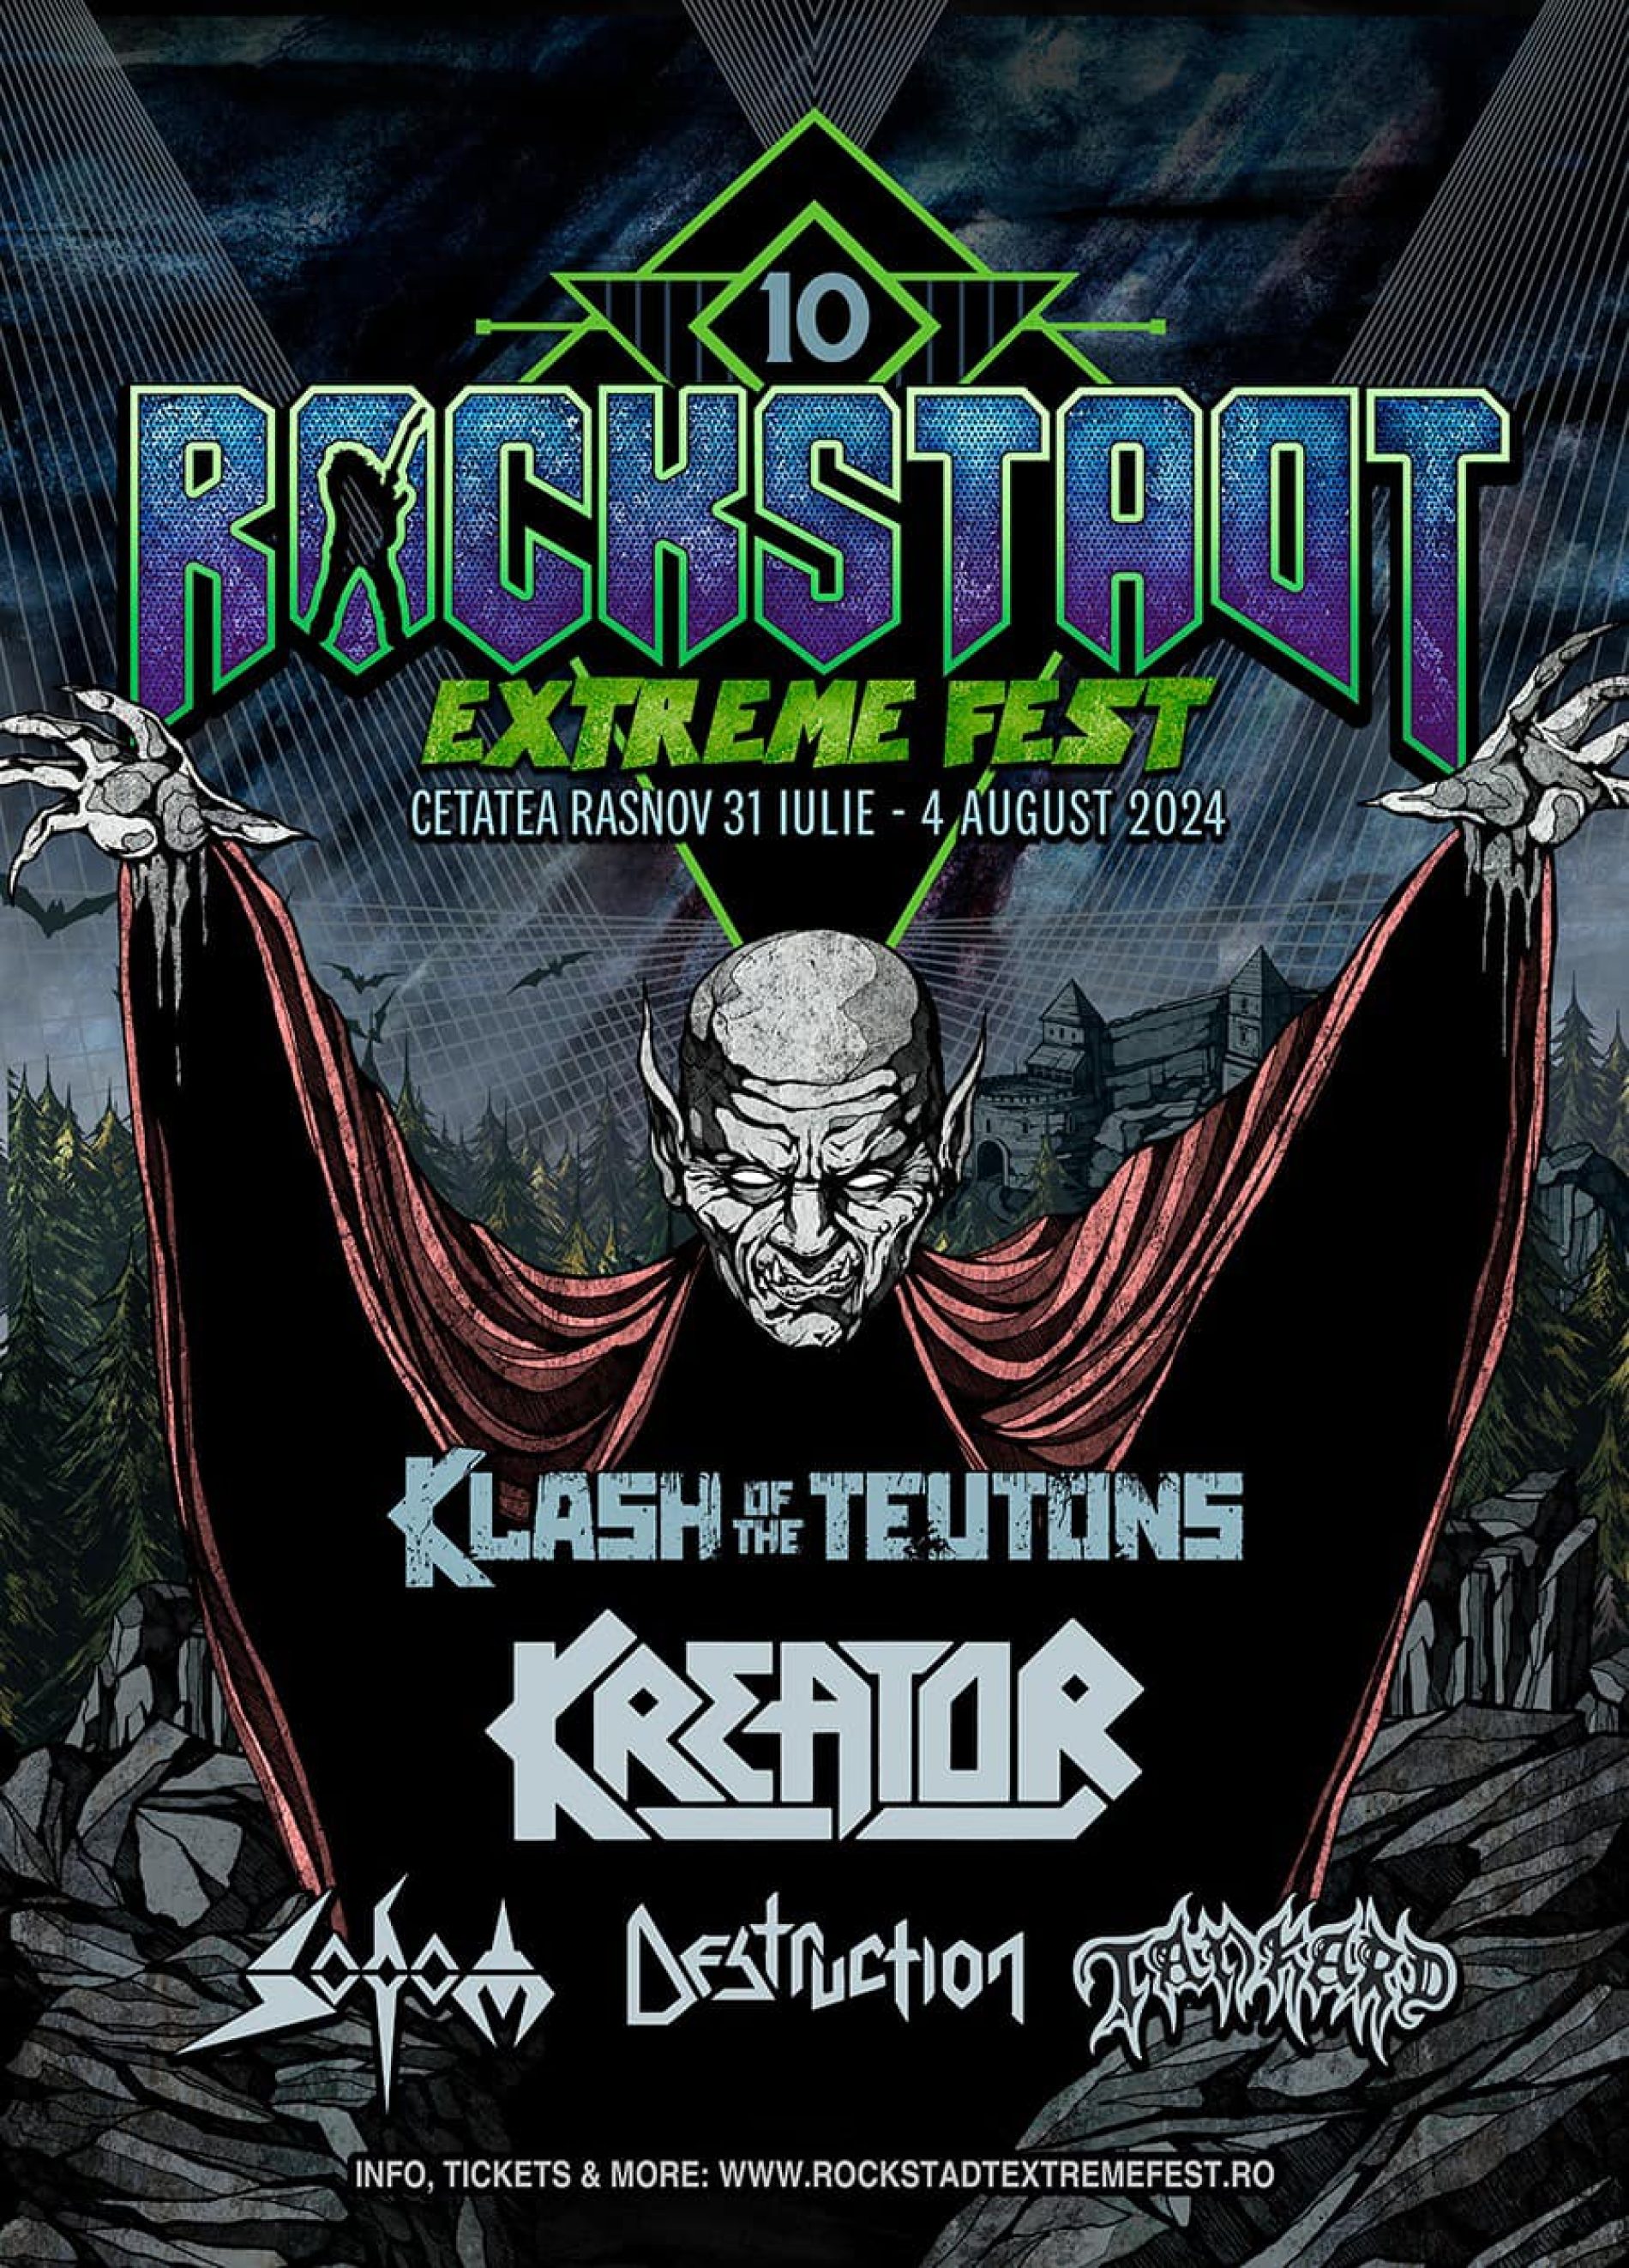 Klash of the Teutons: Kreator, Sodom, Destruction și Tankard împreună în aceeași zi la Rockstadt Extreme Fest